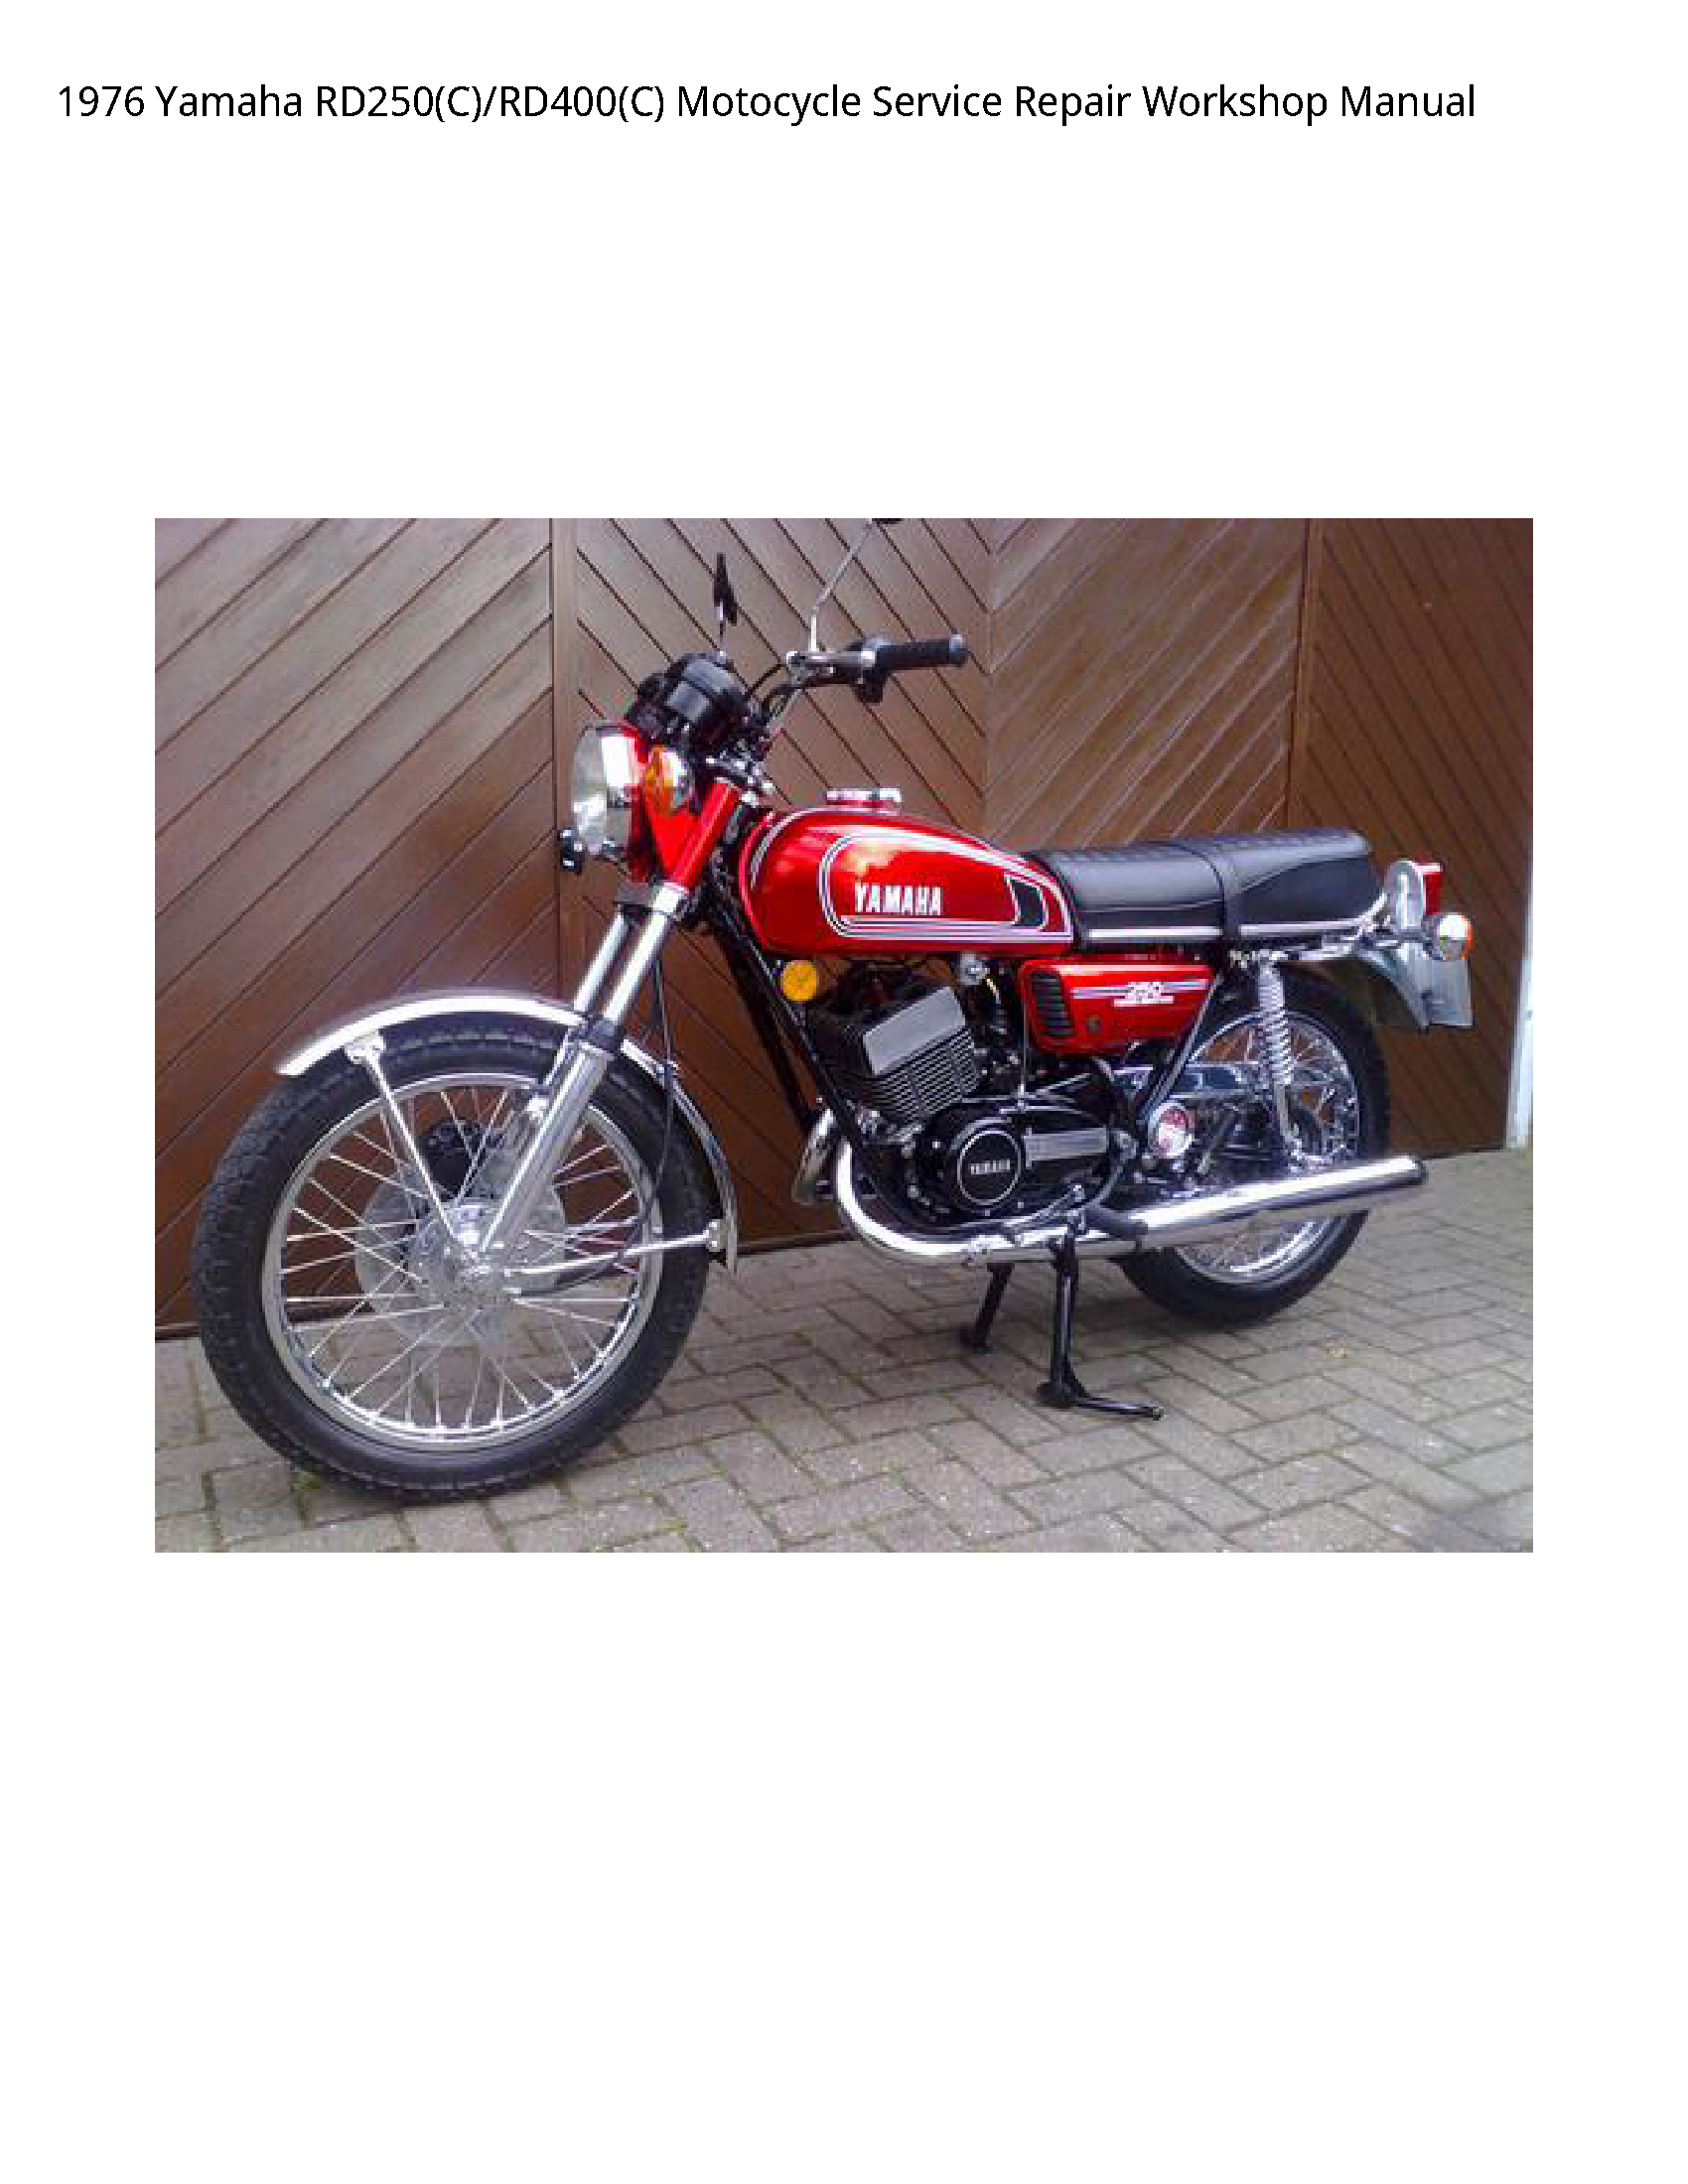 Yamaha RD250(C) Motocycle manual